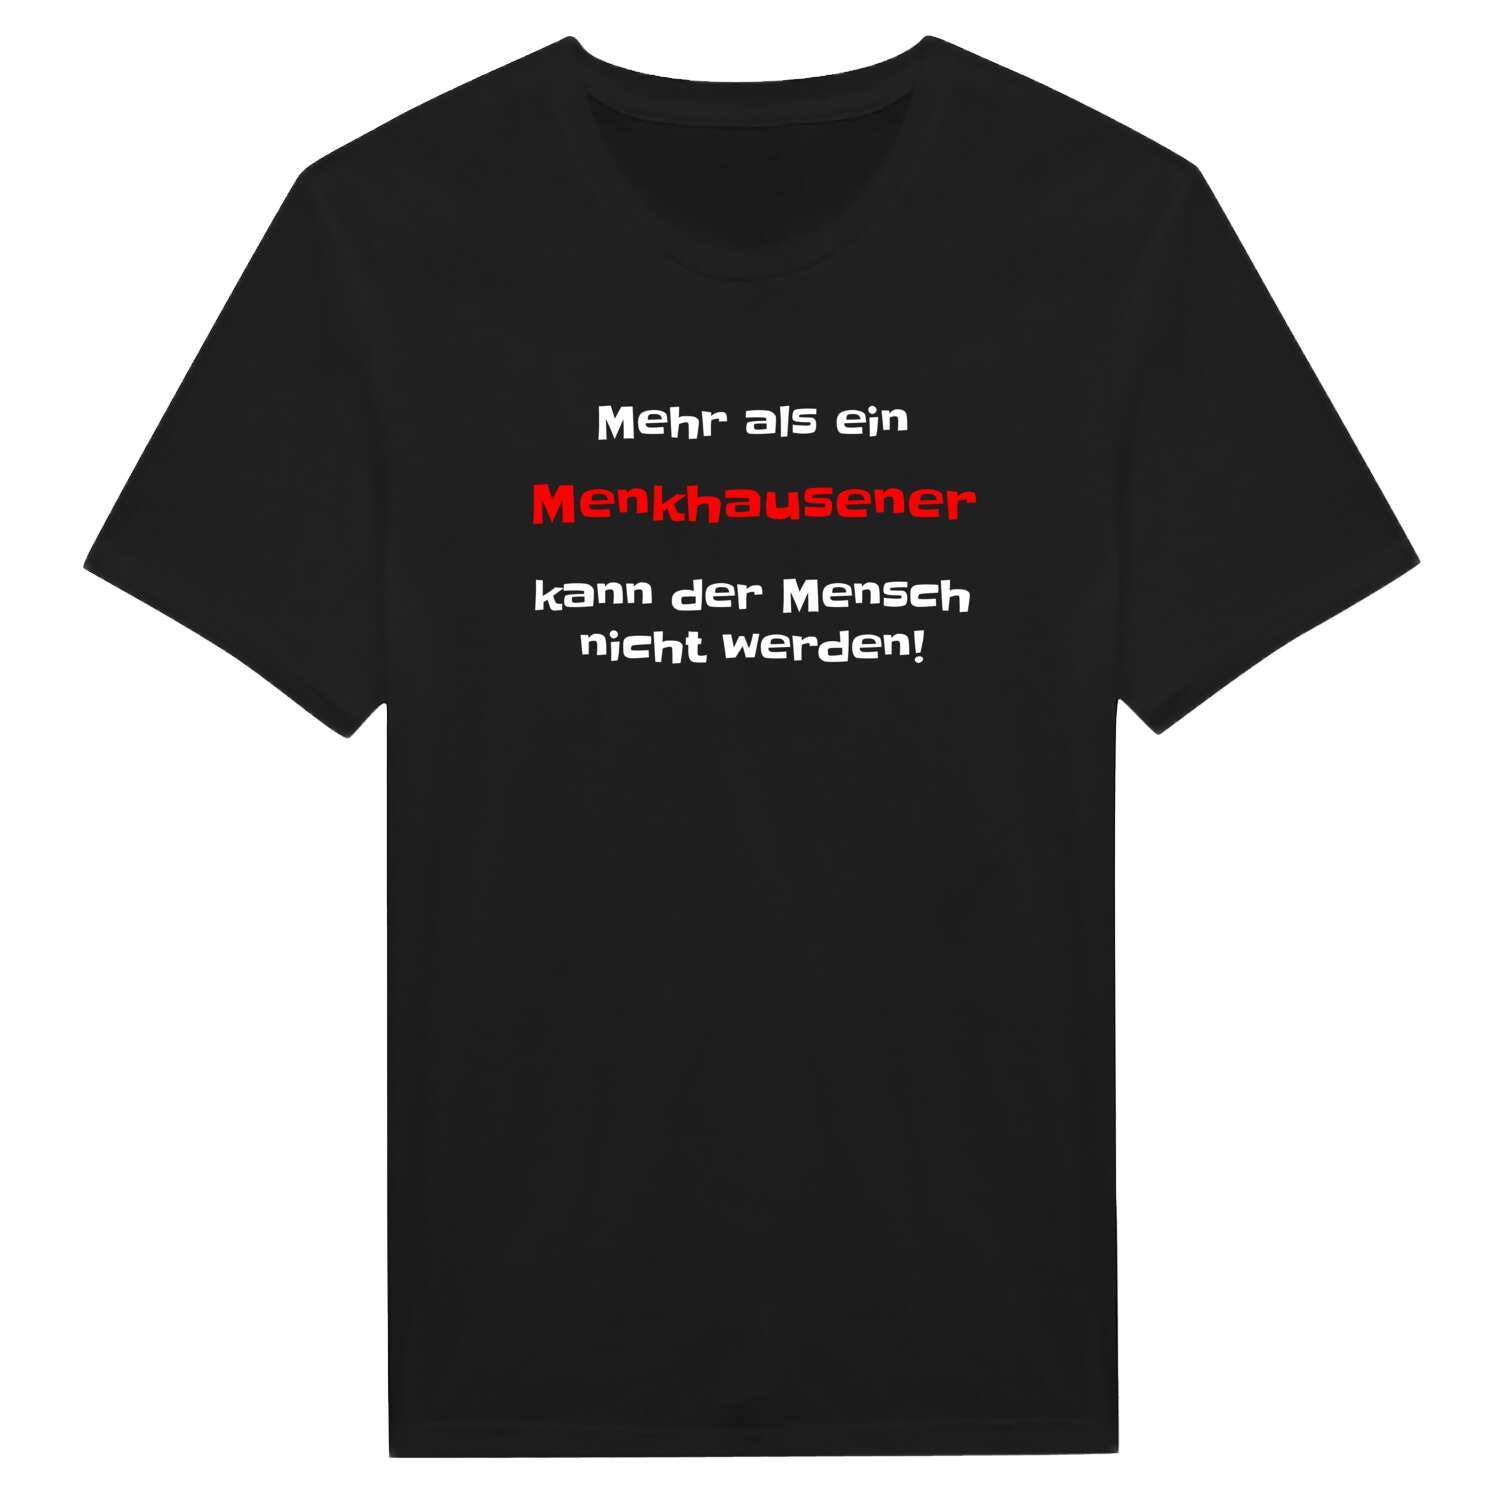 Menkhausen T-Shirt »Mehr als ein«